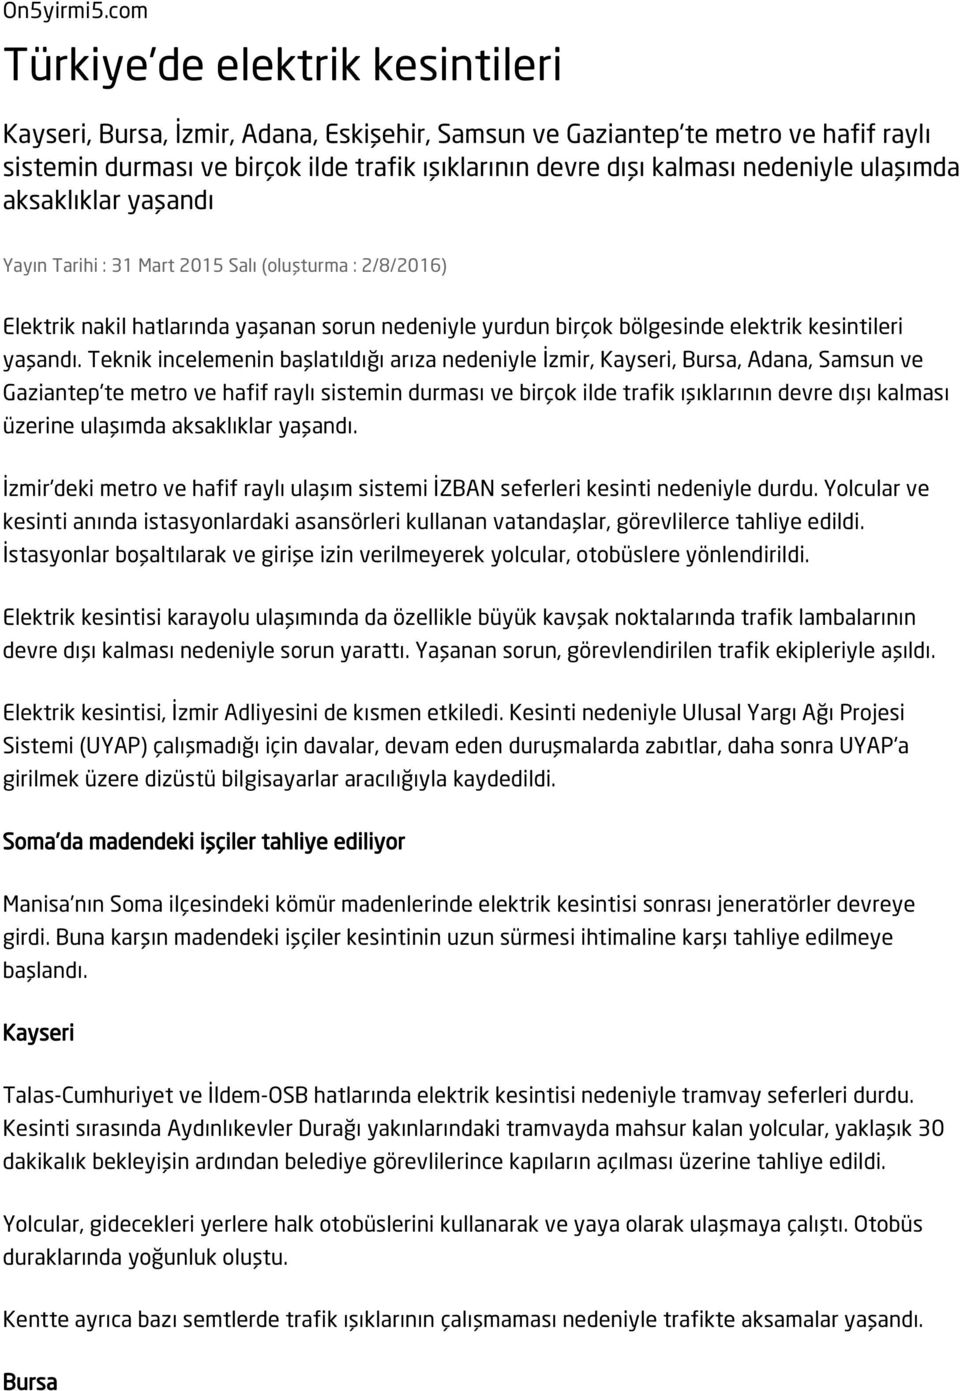 Türkiye'de elektrik kesintileri - PDF Free Download